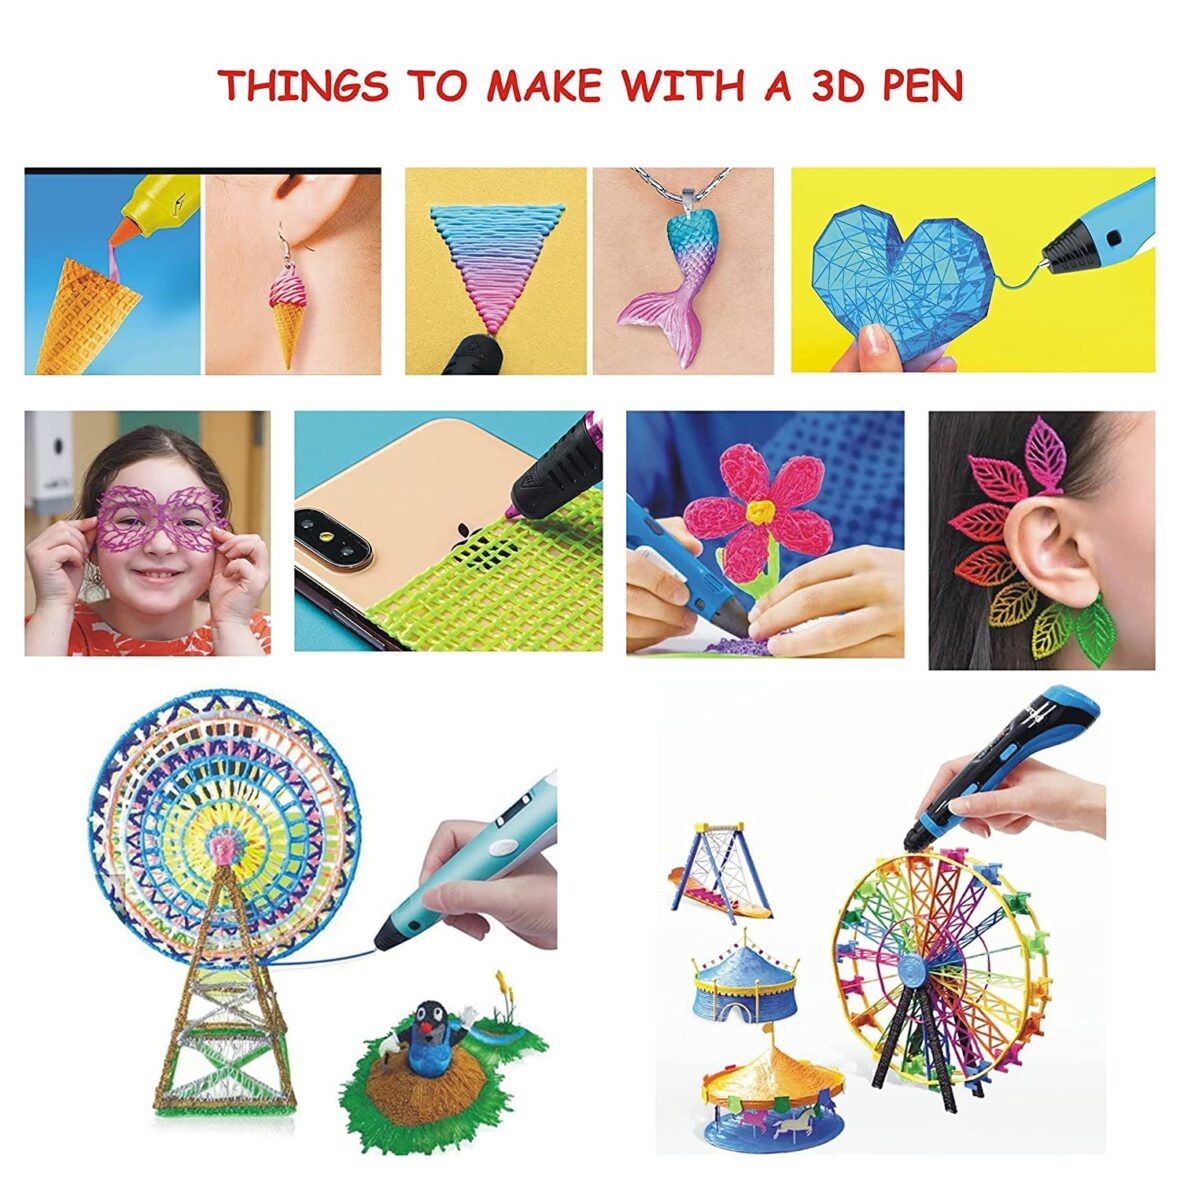 Lariox 3DU Smile Printing Pen With Free 12 PLA Filaments | Includes 3D Pen, FREE 12 FILAMENTS, 3D Pen Holder, Guide, Power Cable (3d_Pen)